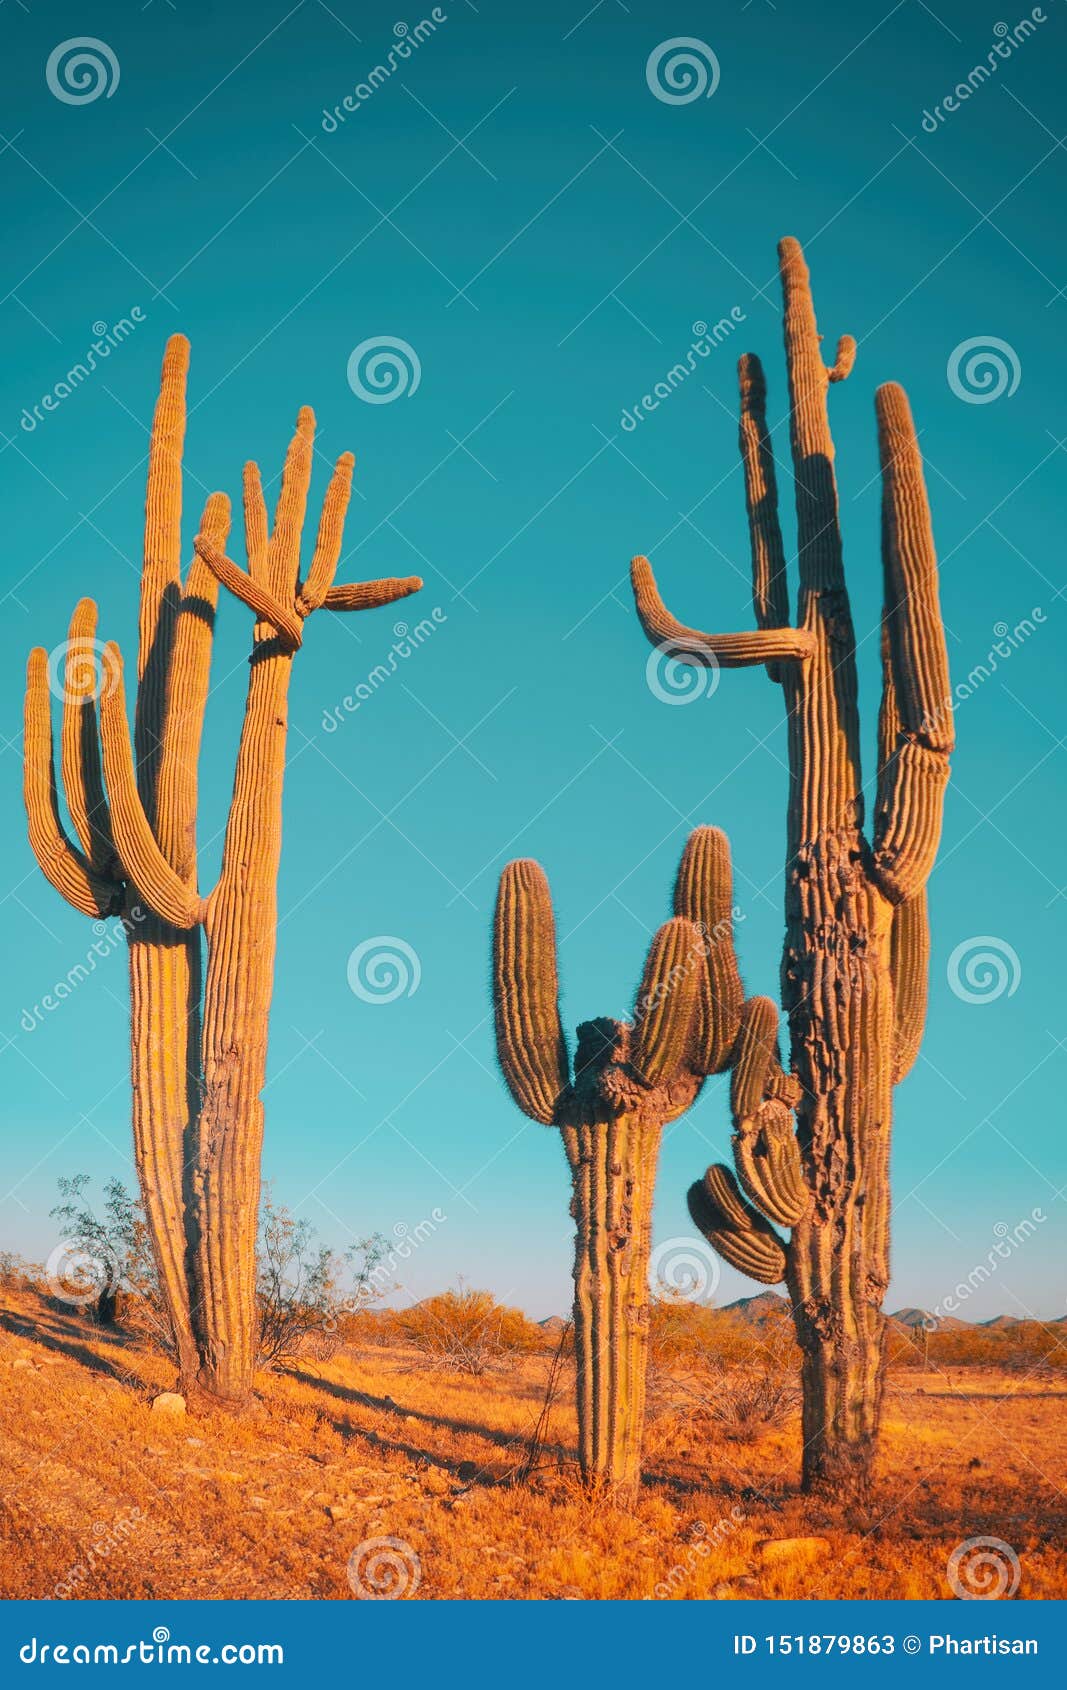 desert saguaro cactus - family quite funny cactus tree